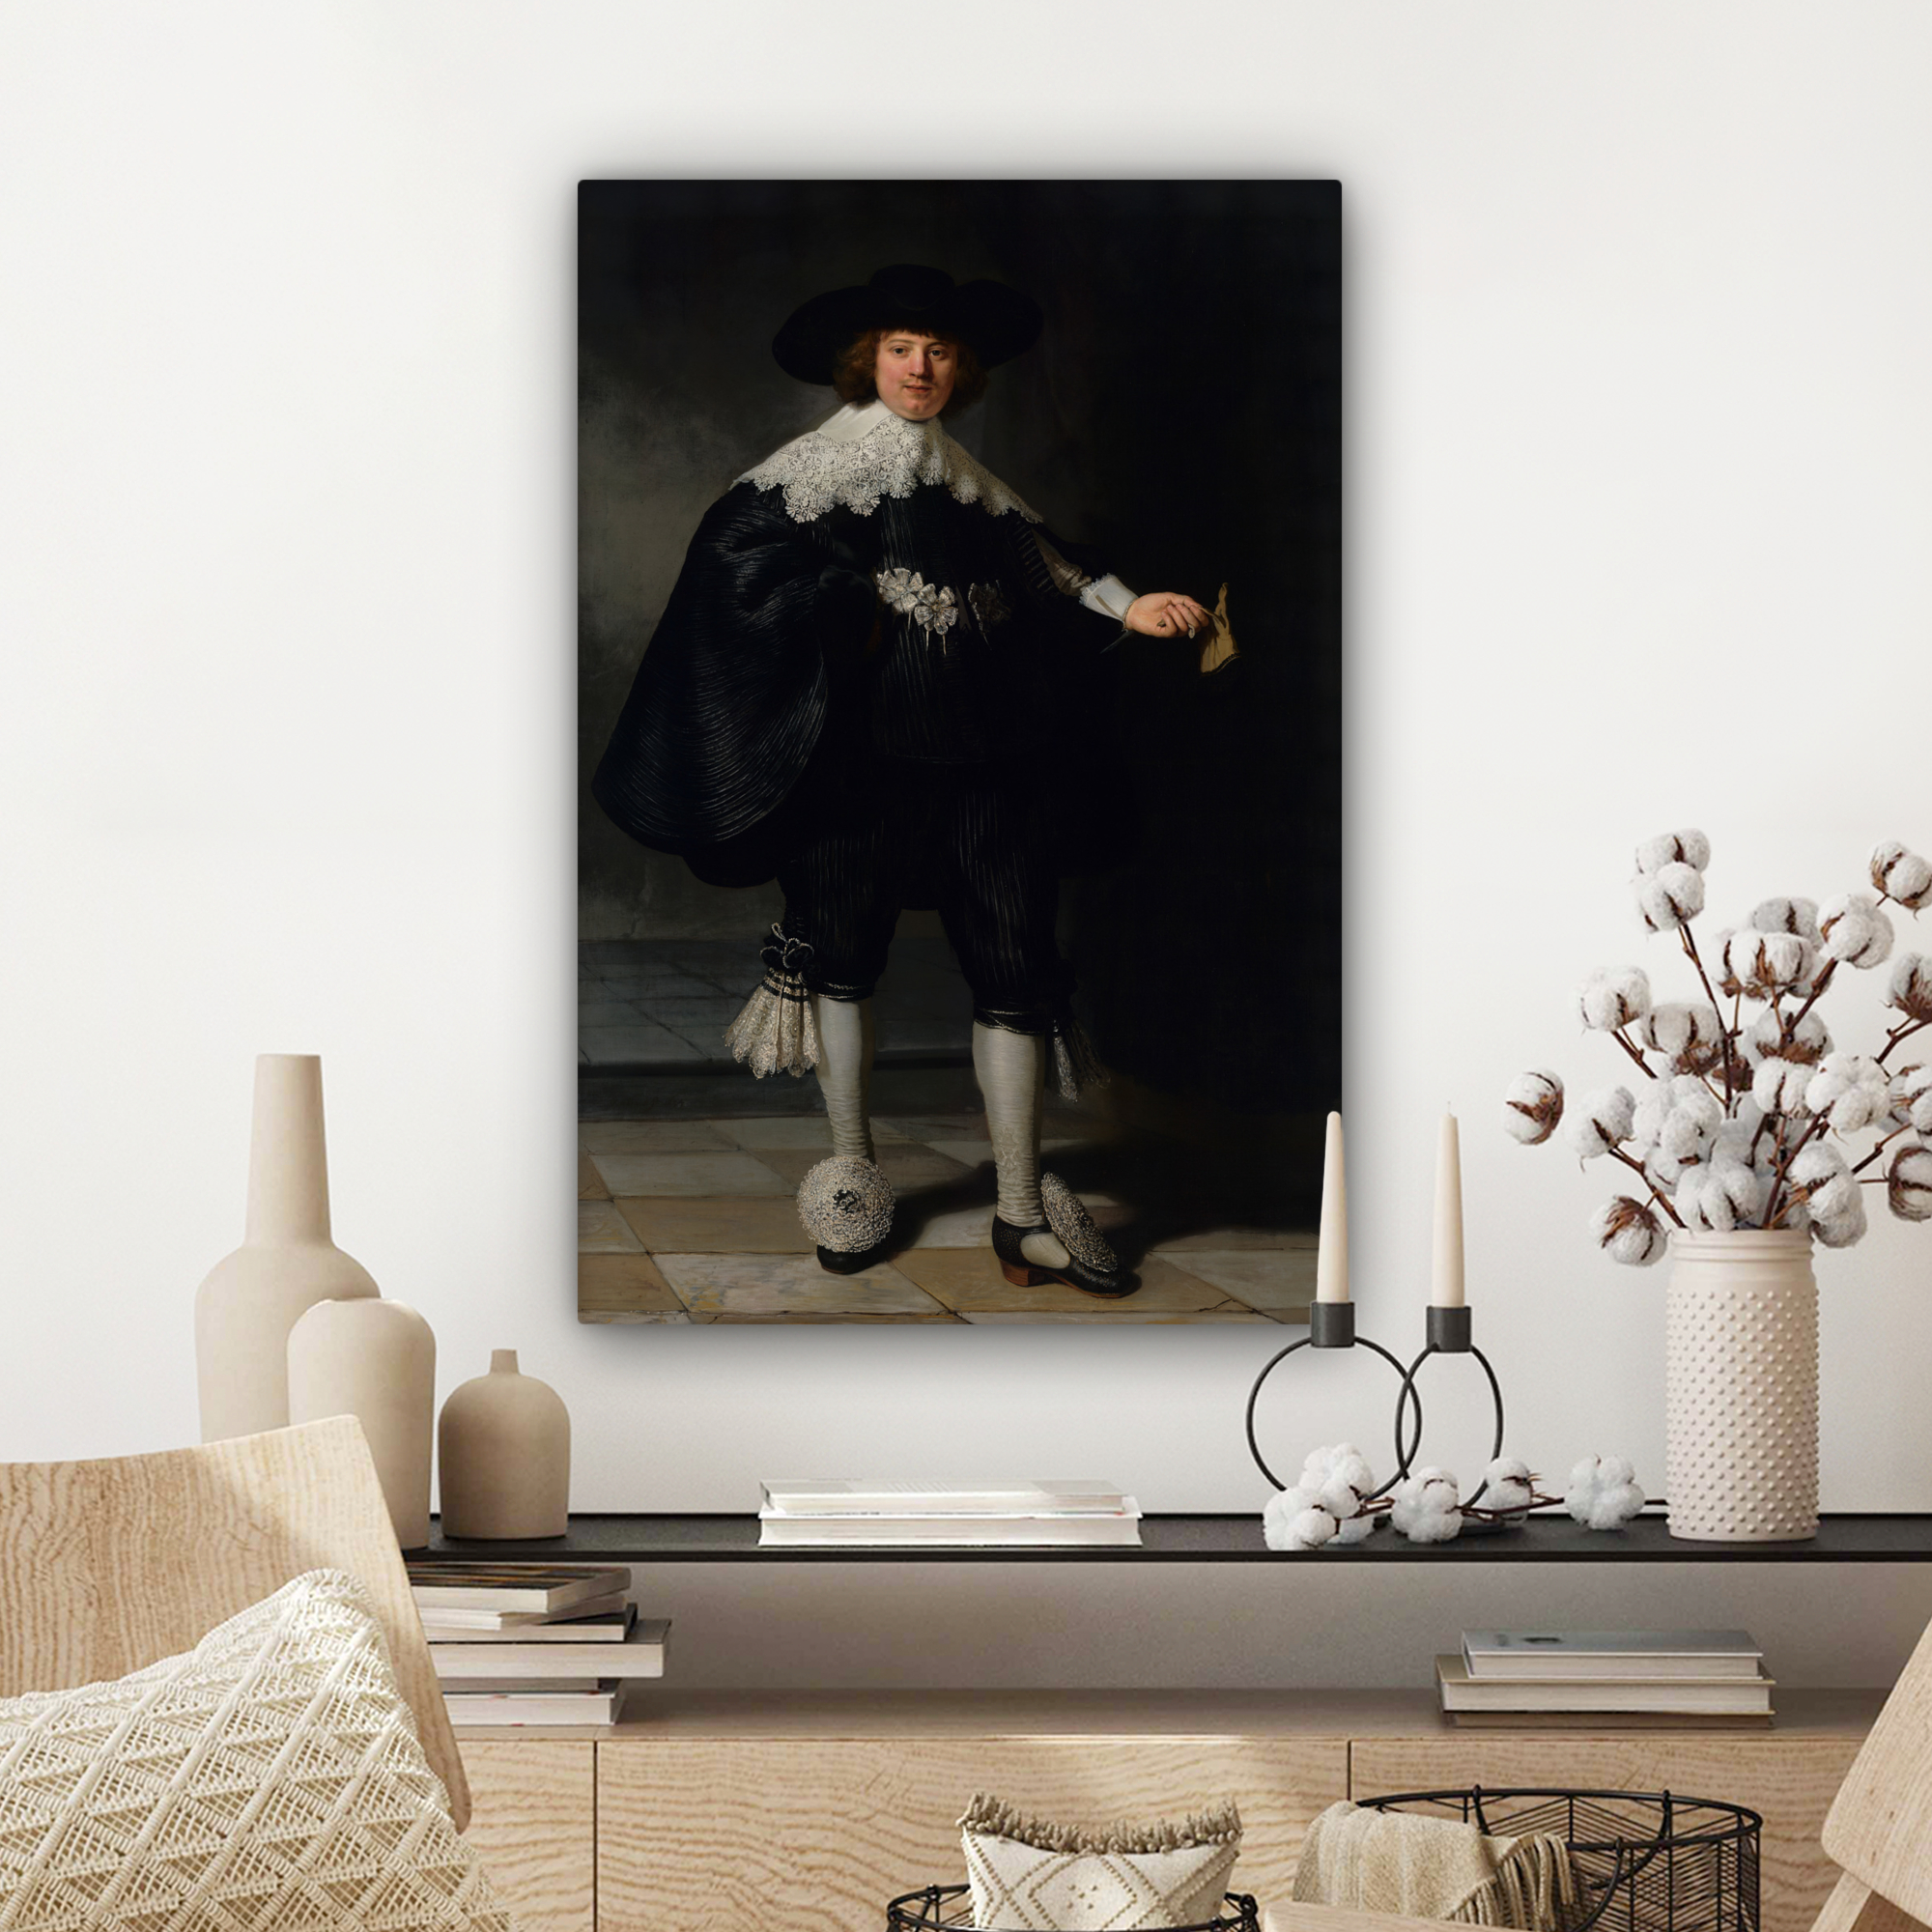 Leinwandbild - Das Hochzeitsbildnis von Marten Soolmans - Rembrandt van Rijn-3